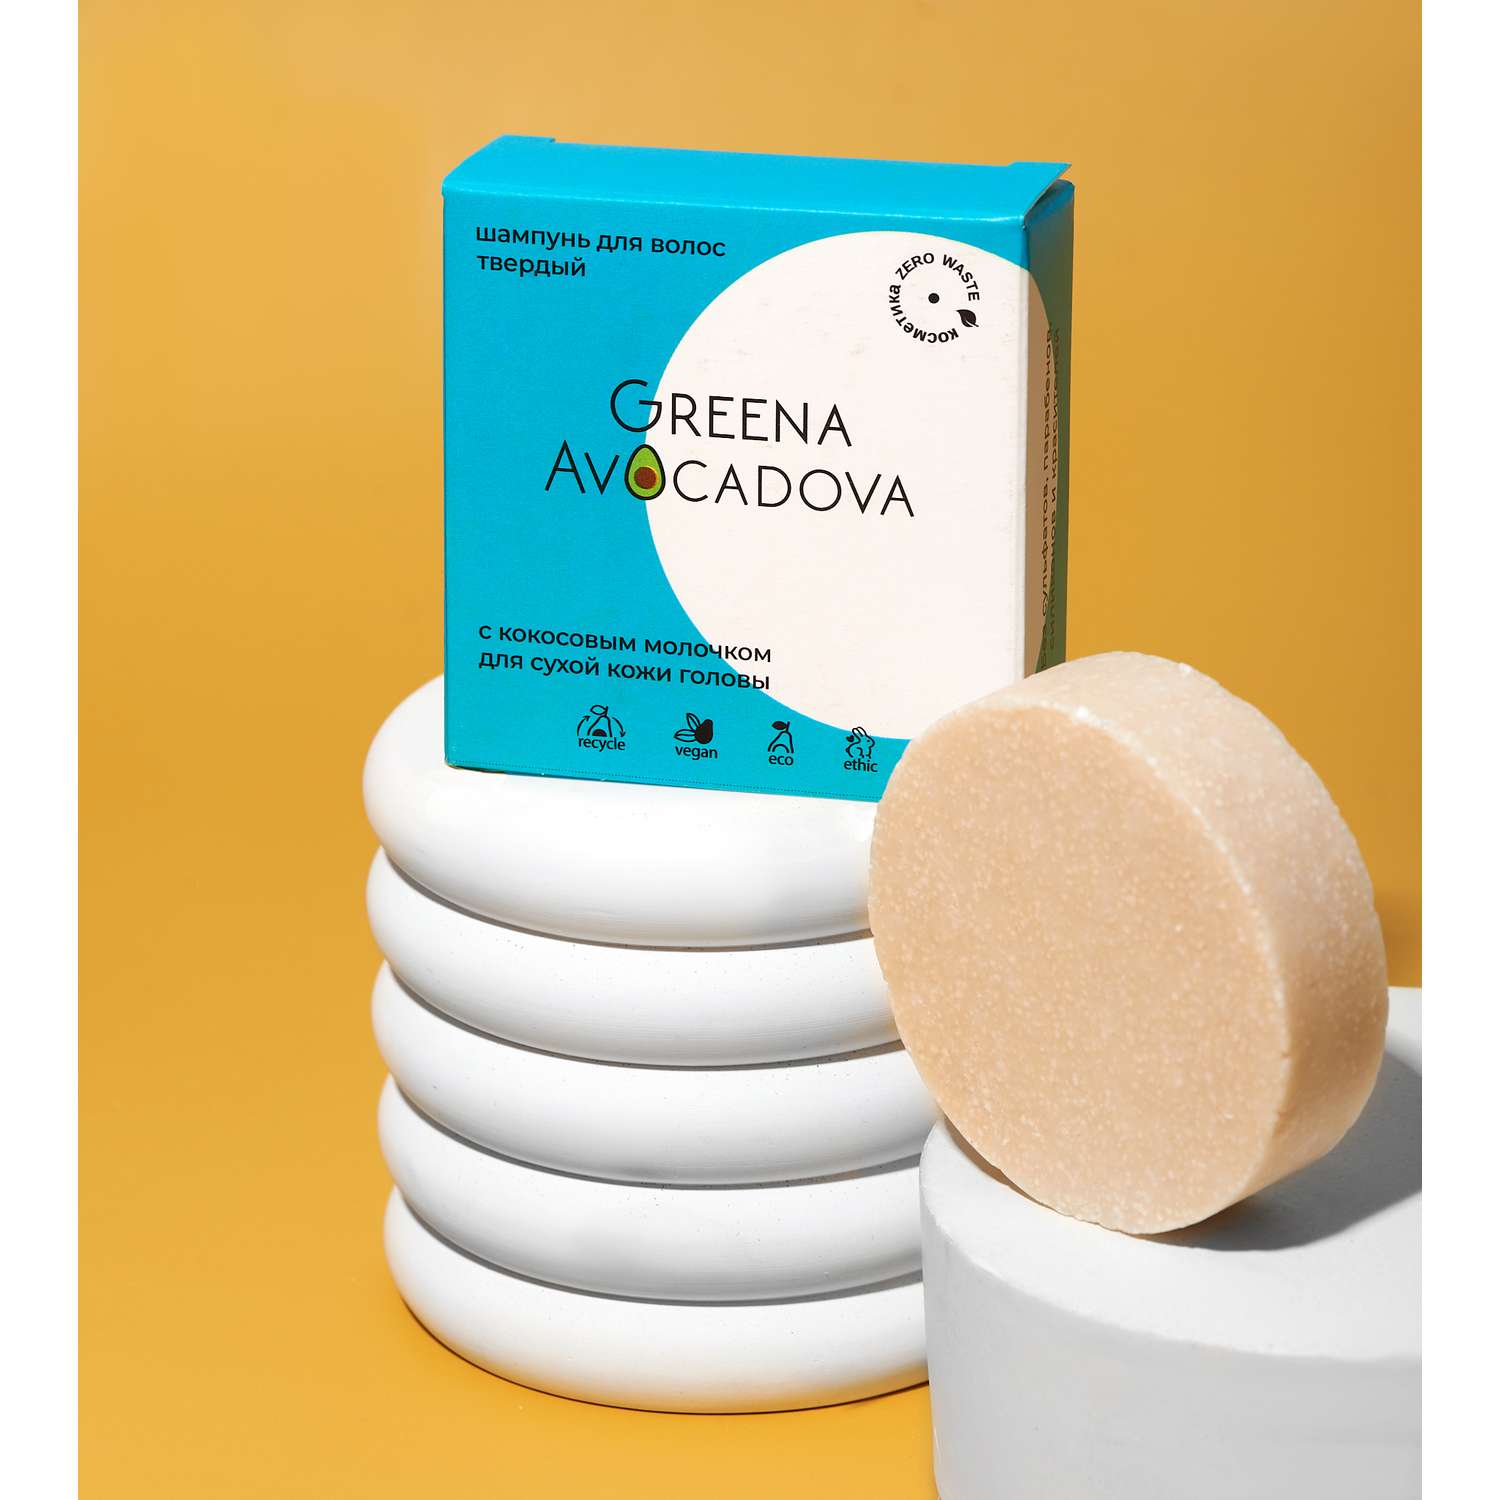 Твердый шампунь Greena Avocadova с кокосовым молочком для сухой кожи головы - фото 2